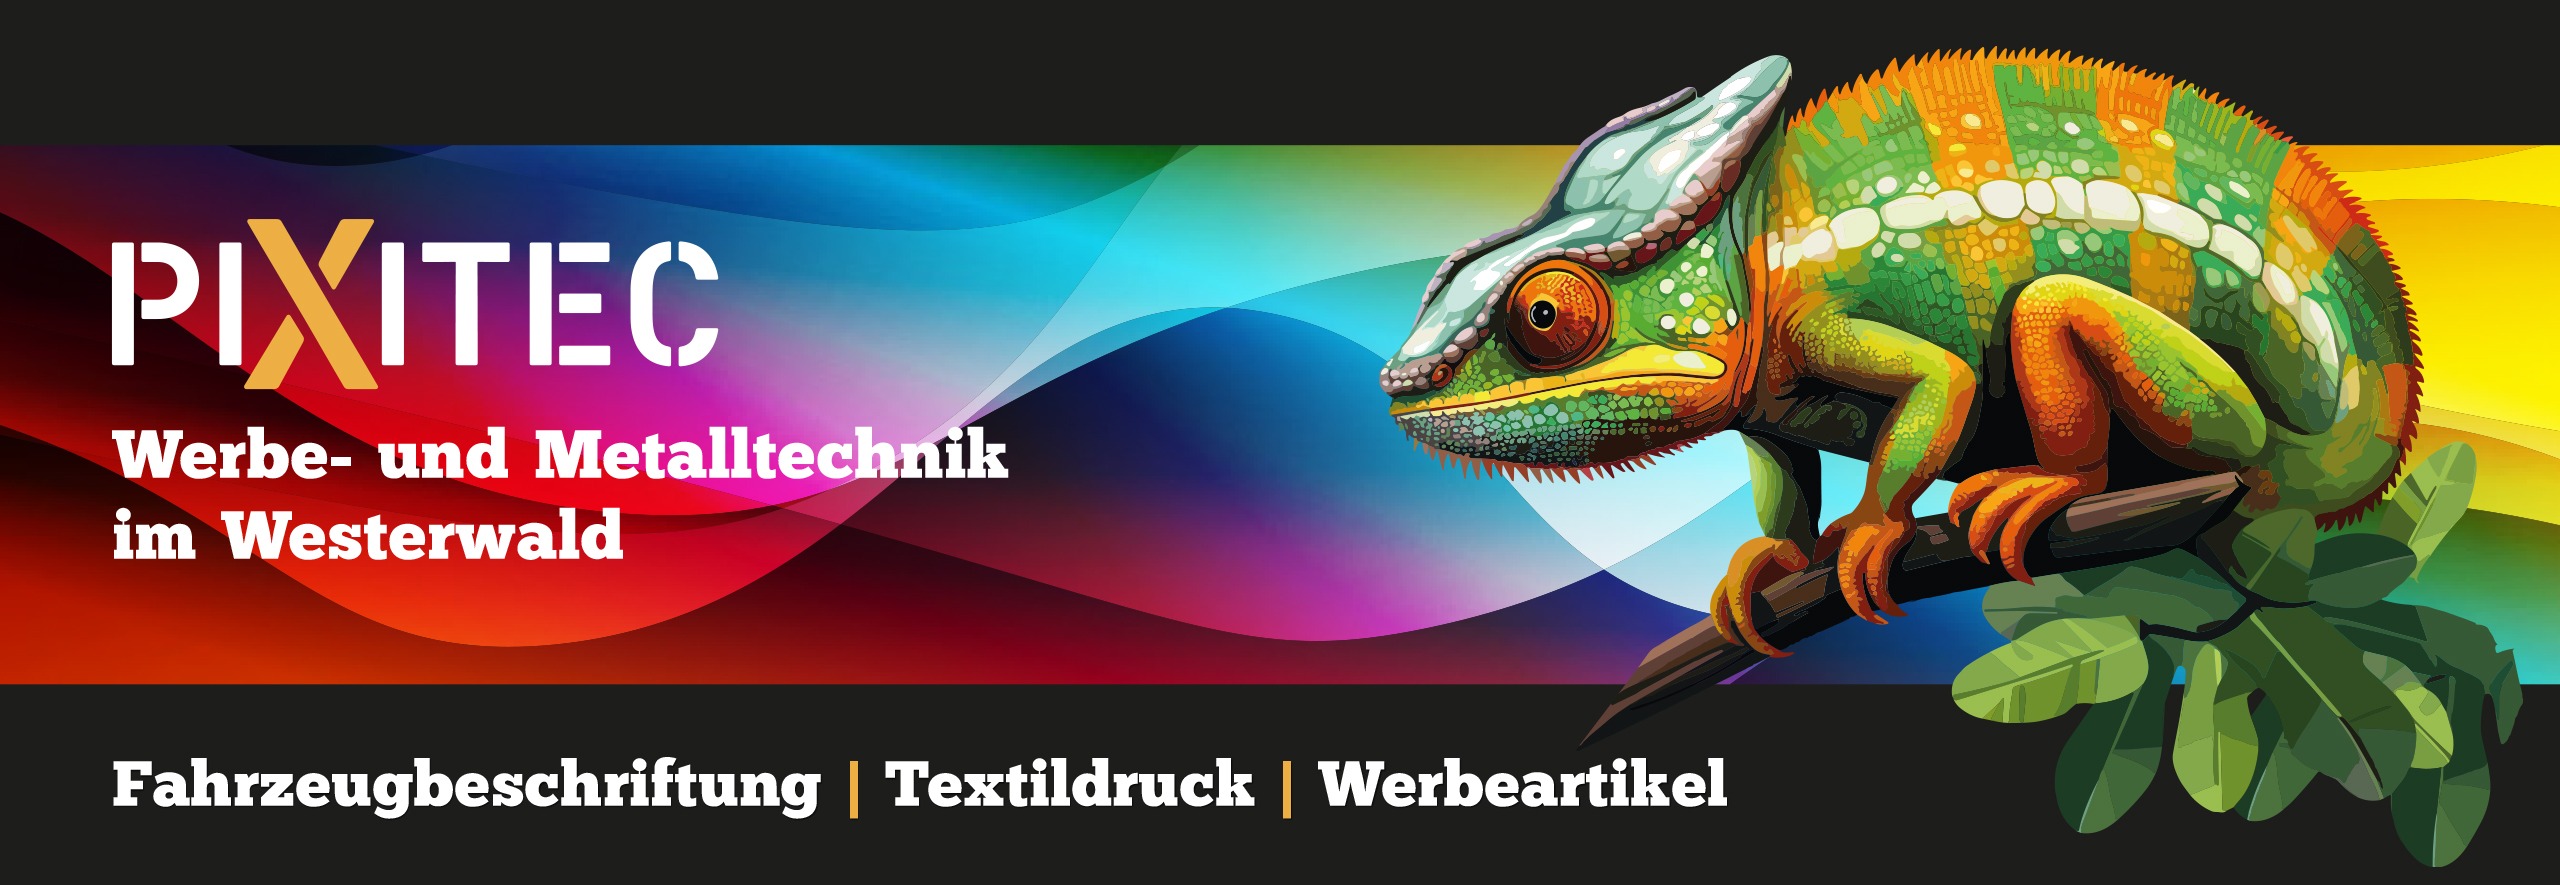 www.pixitec.de | Werbebanner Webseite | UV-Drucktechnik